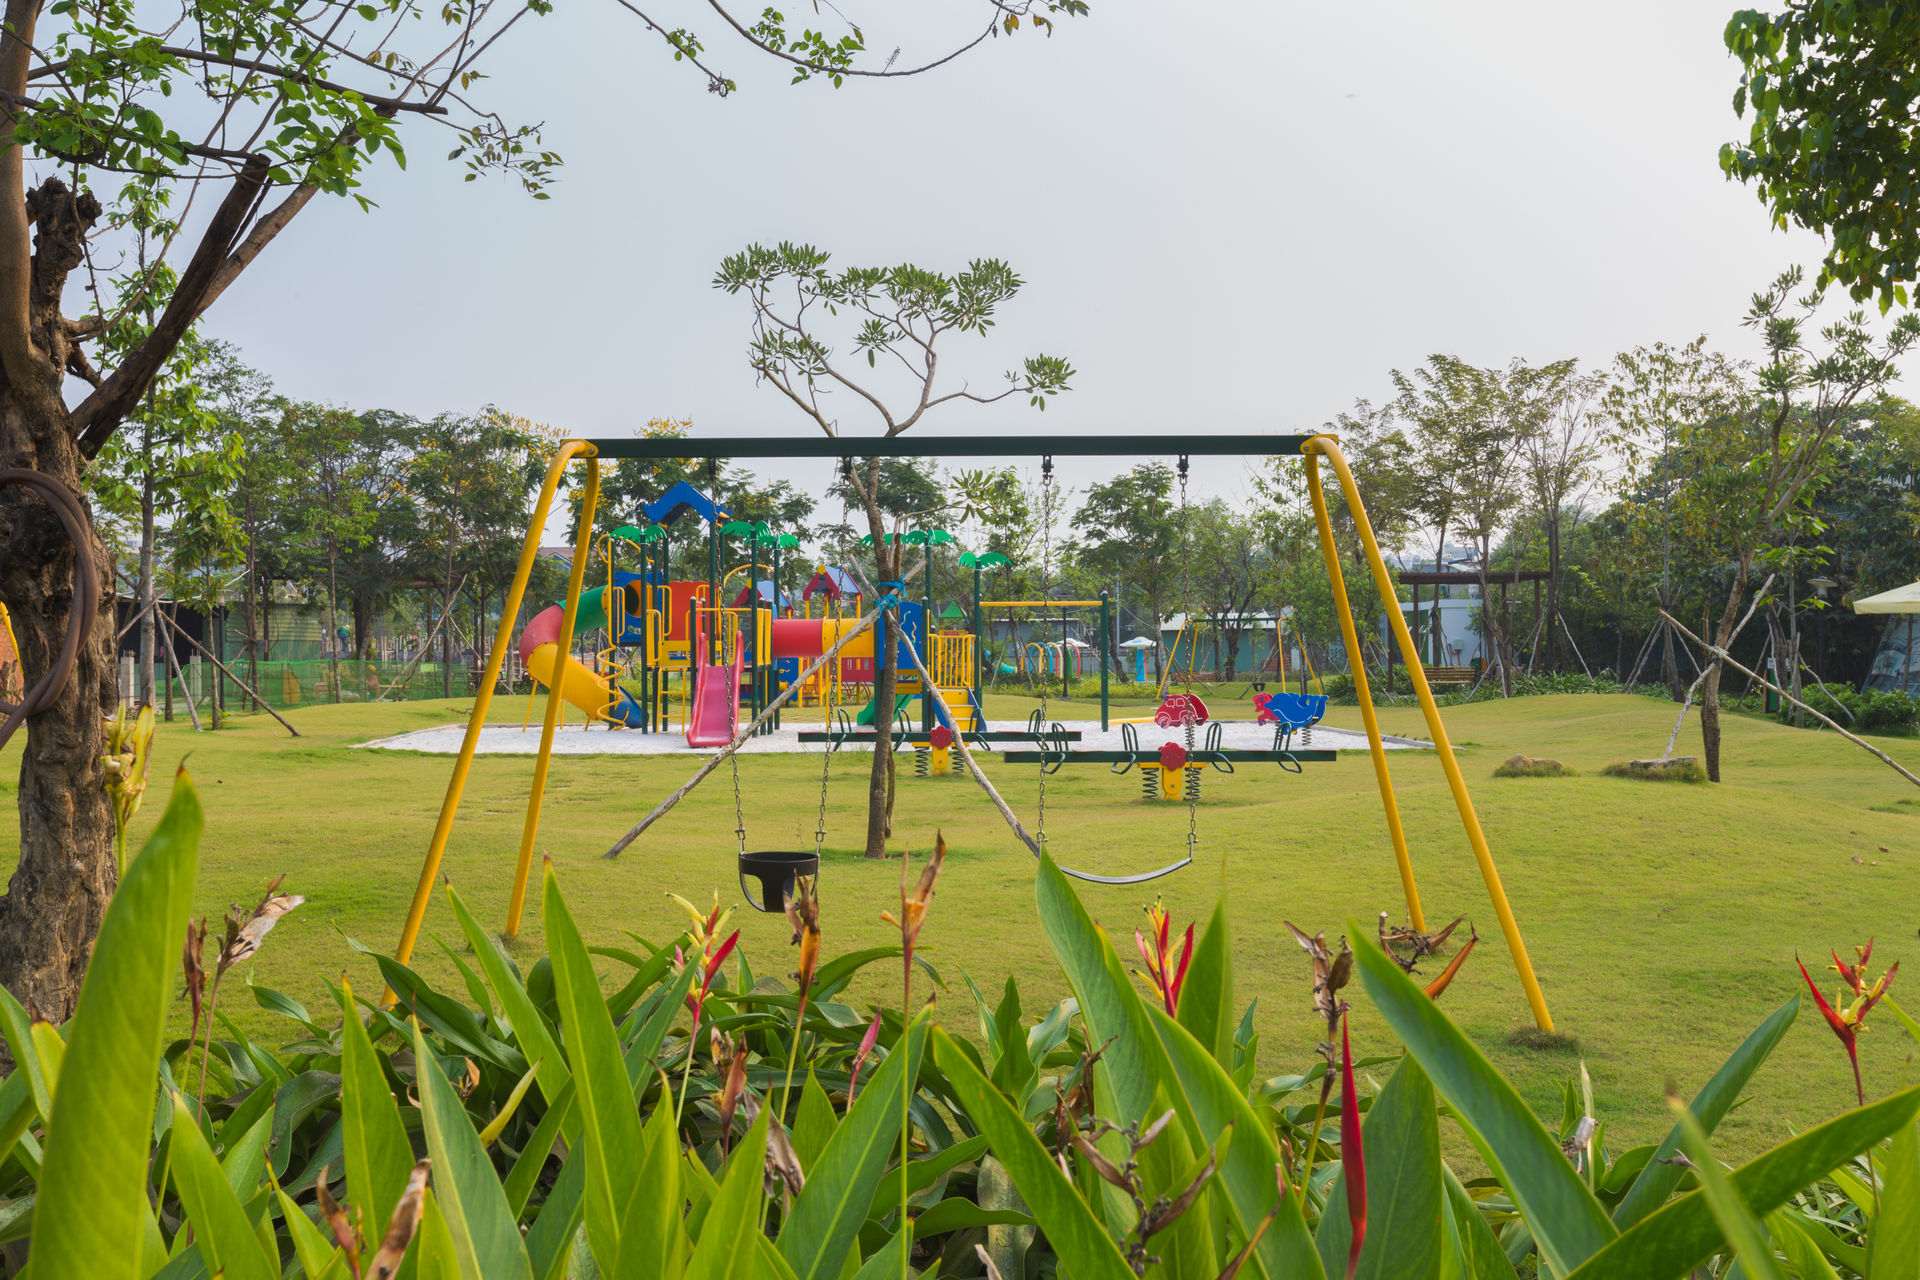   Công viên và những con đường rợp bóng mát là nơi trẻ em chơi đùa, vận động.  